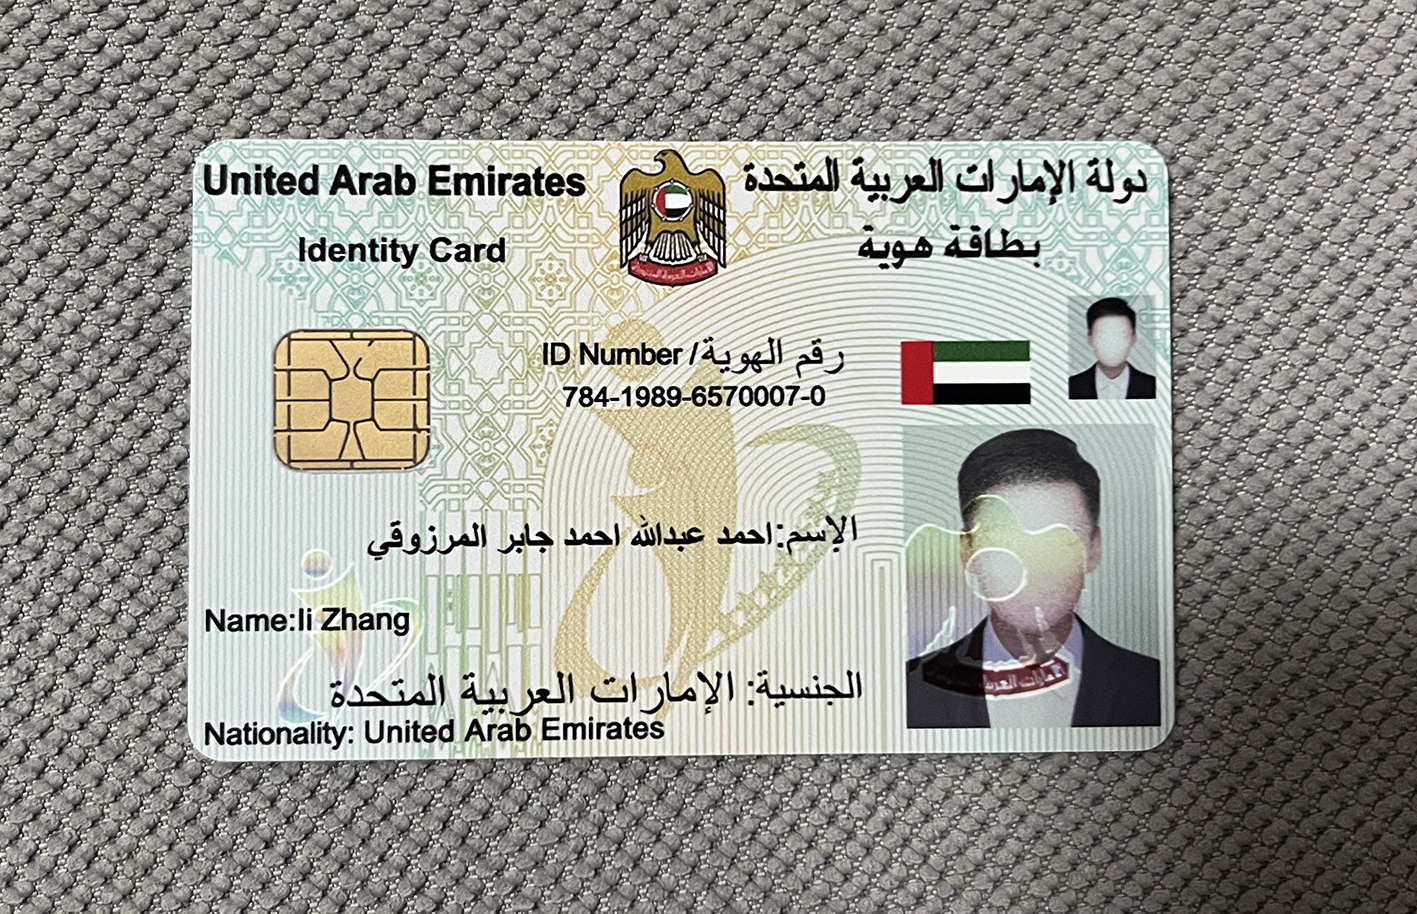 迪拜身份证.jpg 迪拜身份证 亚洲